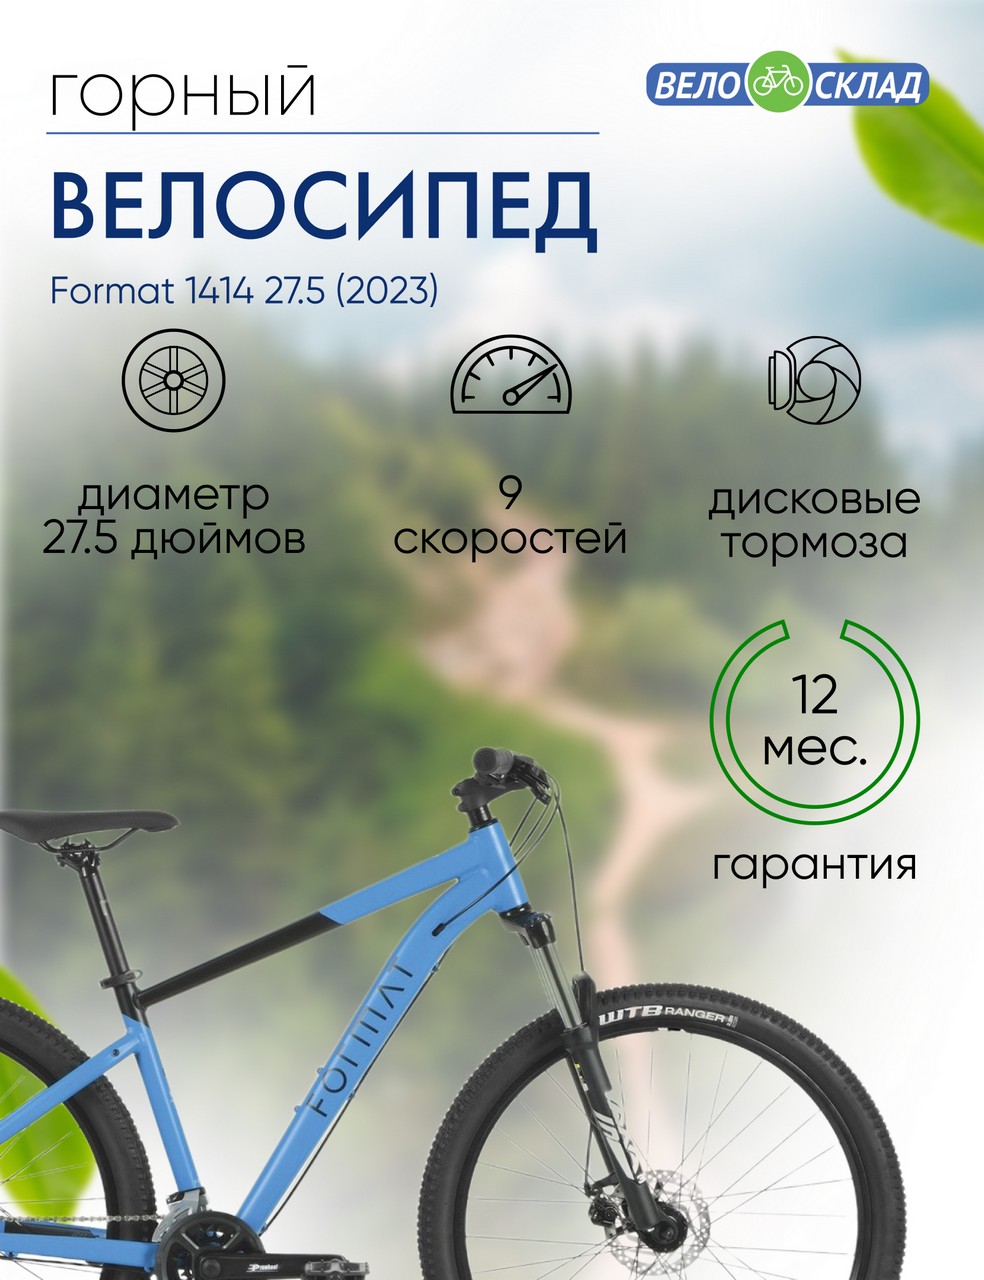 Горный велосипед Format 1414 27.5, год 2023, цвет Синий-Черный, ростовка 17